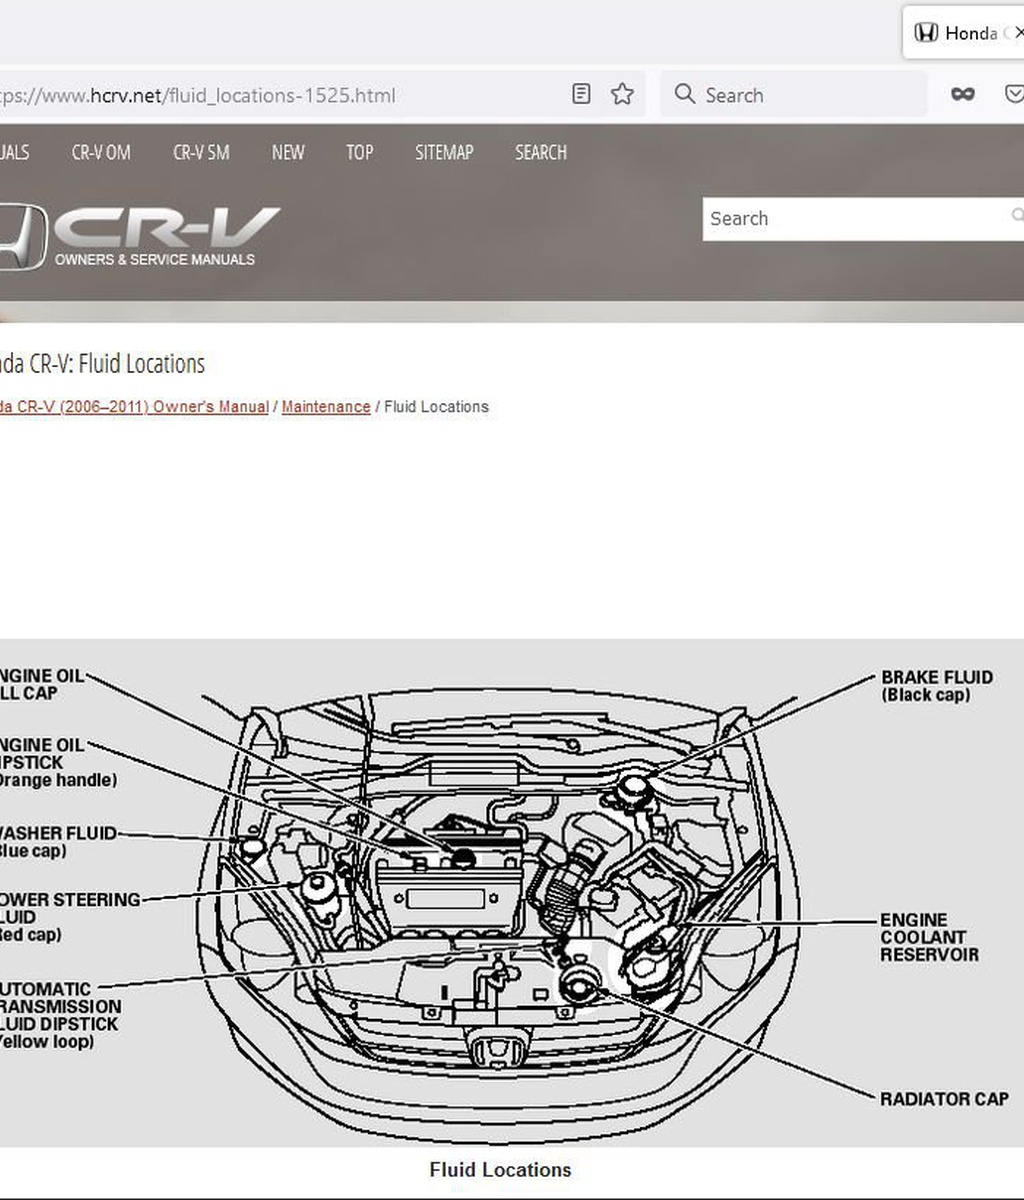 Honda CR-V: manuals and service guides|베콤카 (bekomcar.com)